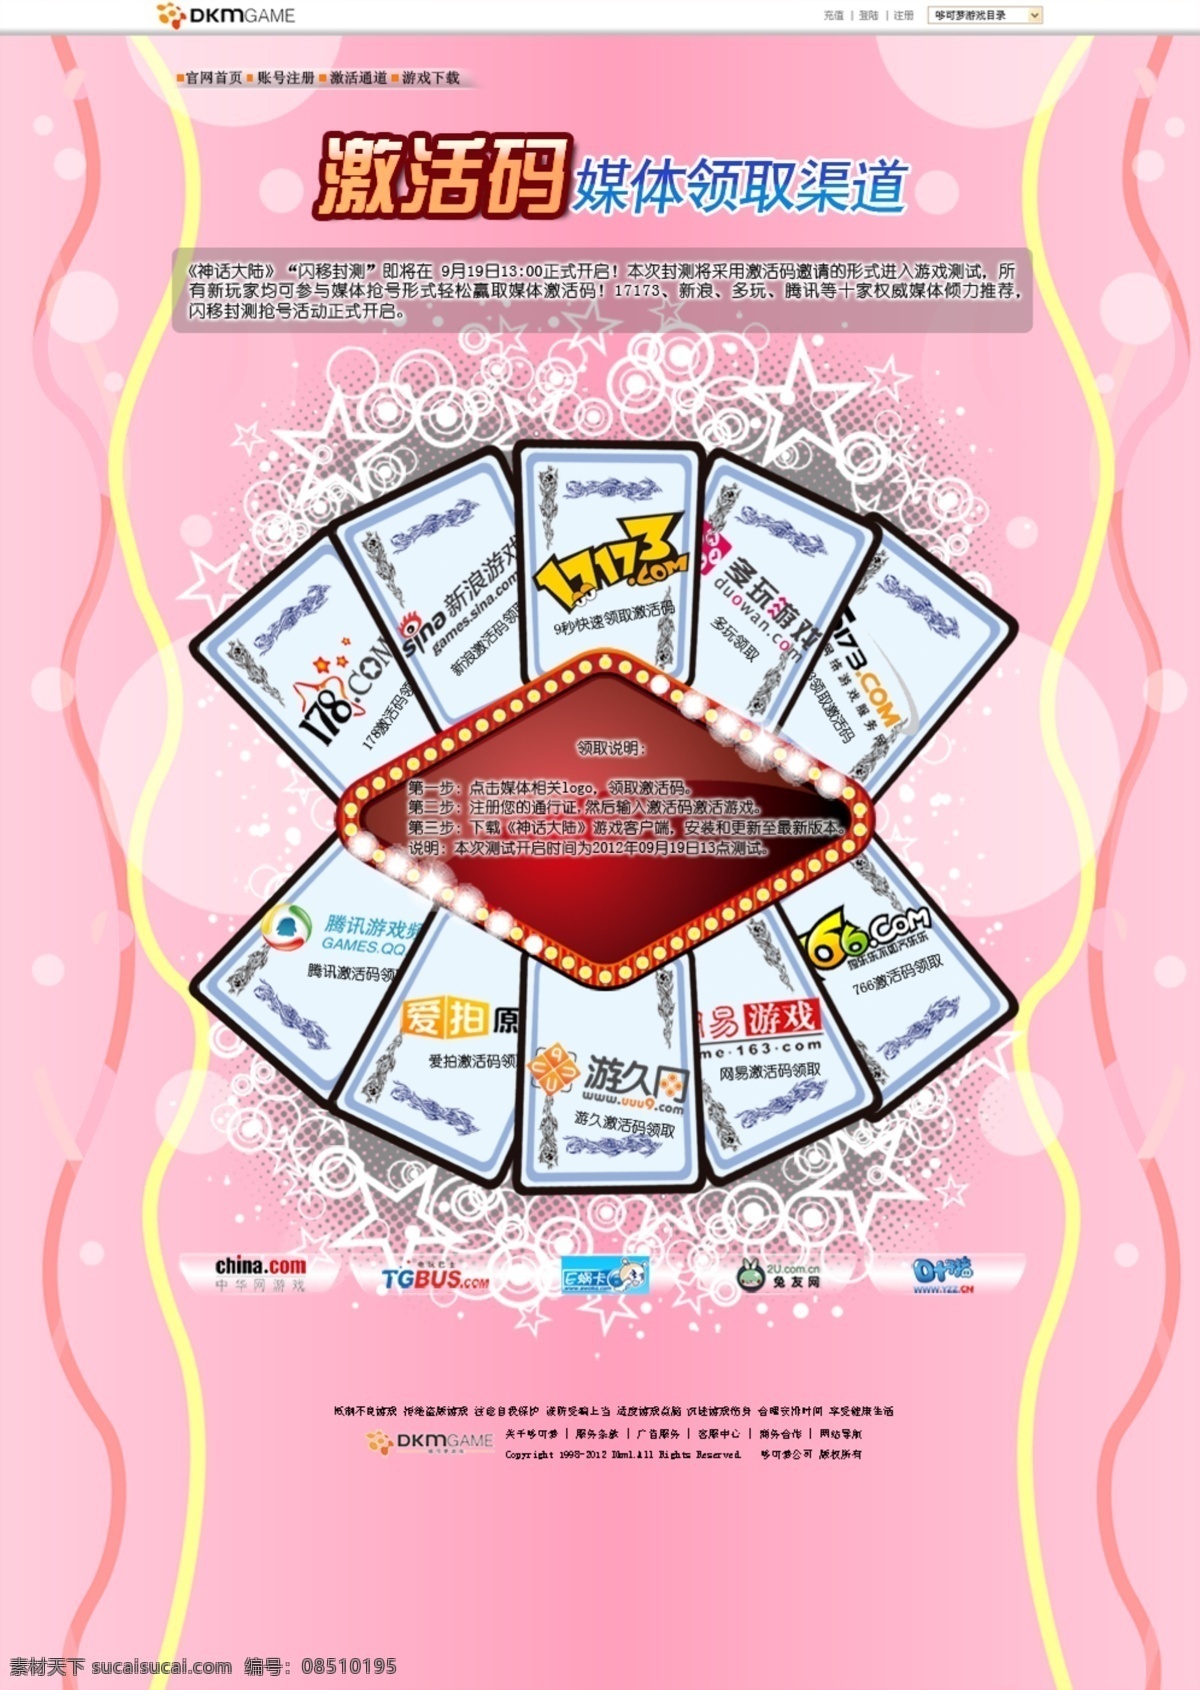 网页模板 底纹 花边 扑克 游戏网页 源文件 中文模版 推荐网页 网页素材